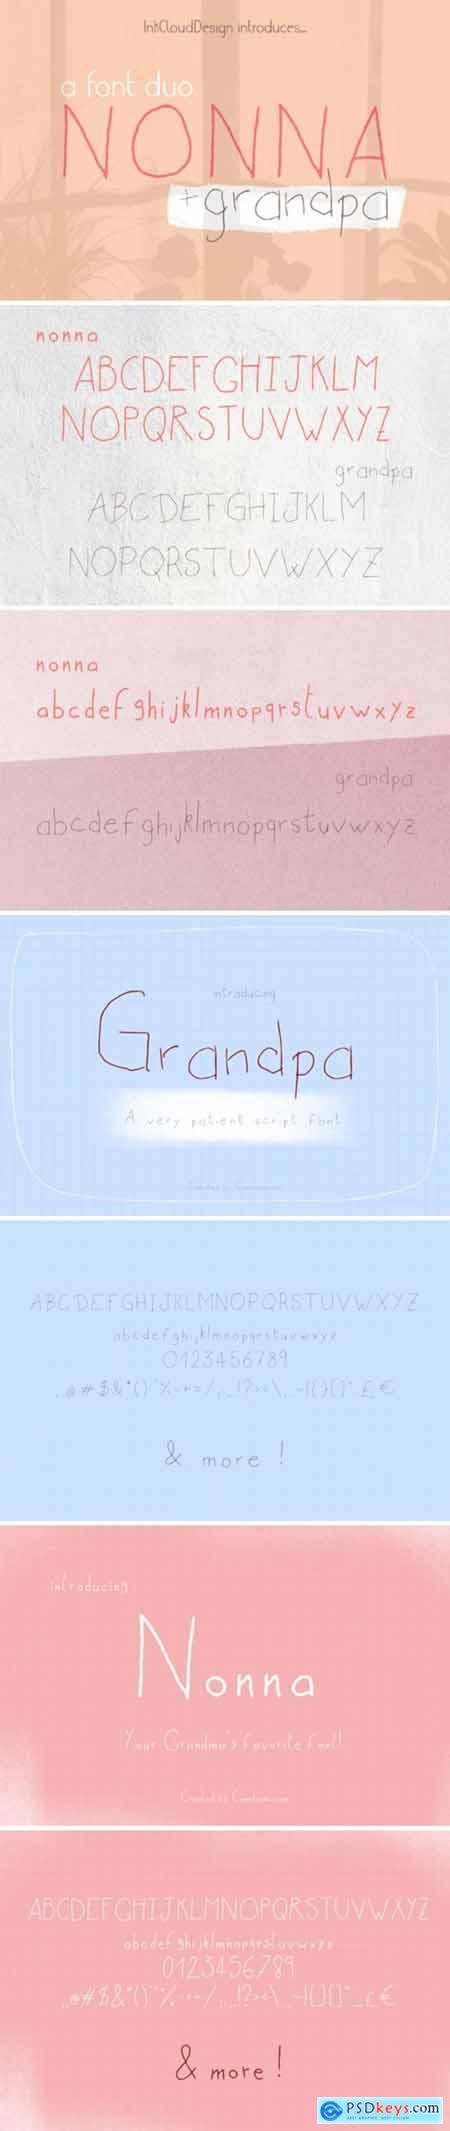 Nonna + Grandpa Font